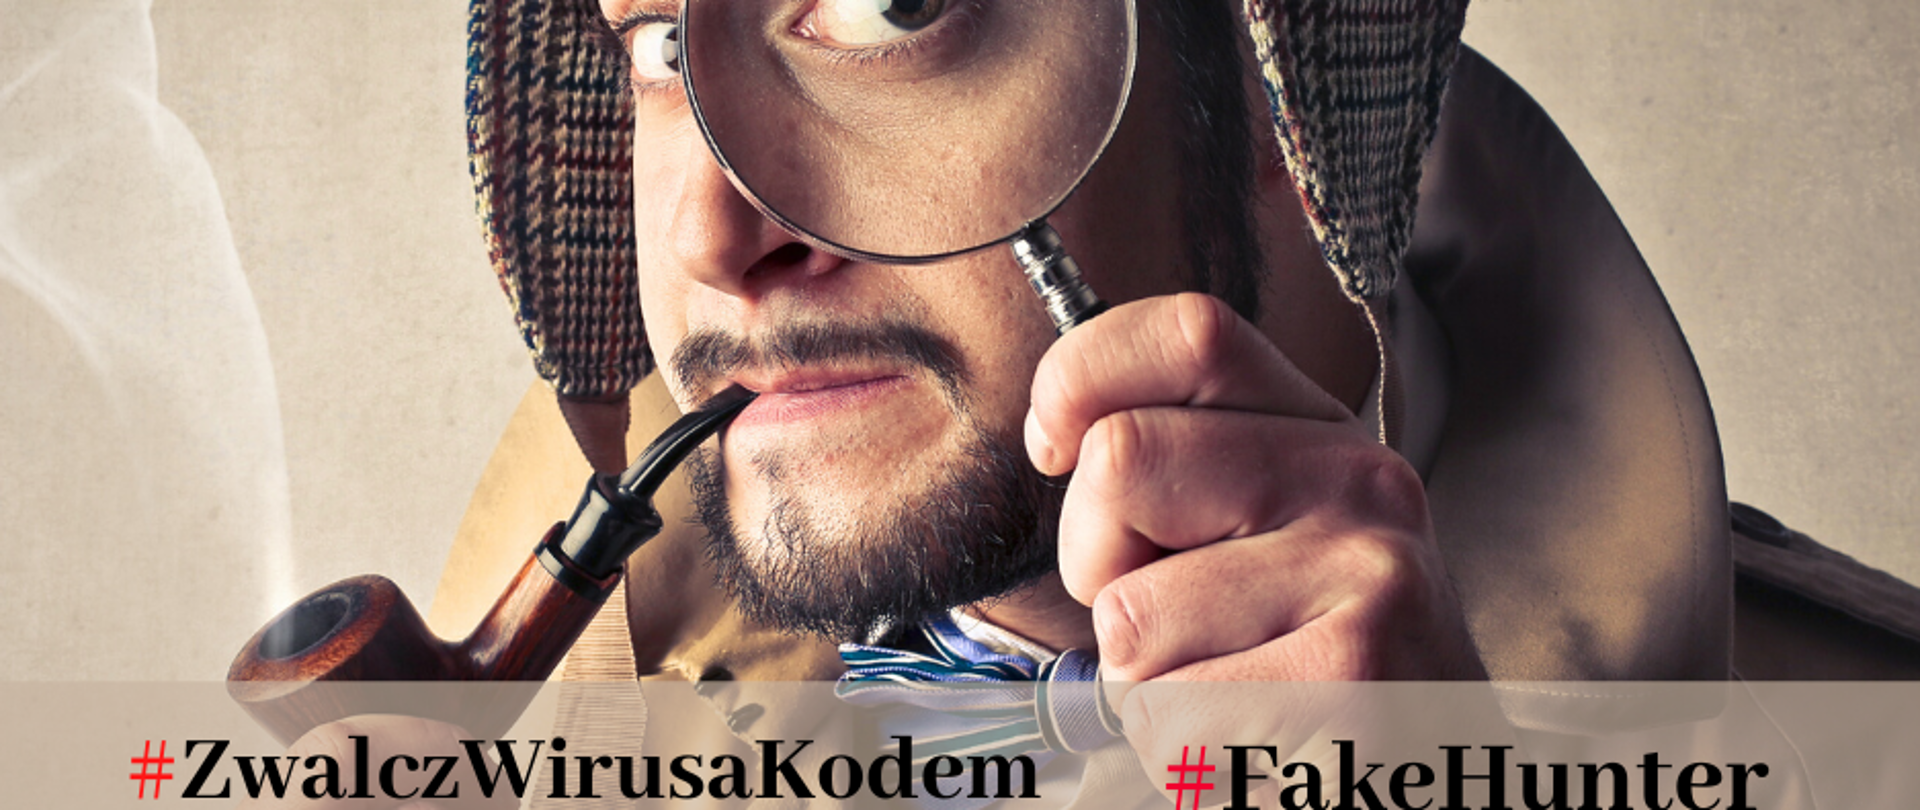 Mężczyzna w stroju Sherlocka Holemsa, z brodą. W ustach ma fajkę, przy oku lupę. Podpis: #ZwalczWirusaKodem #FakeHunter
Polska Agencja Prasowa (PAP), GovTech Polska